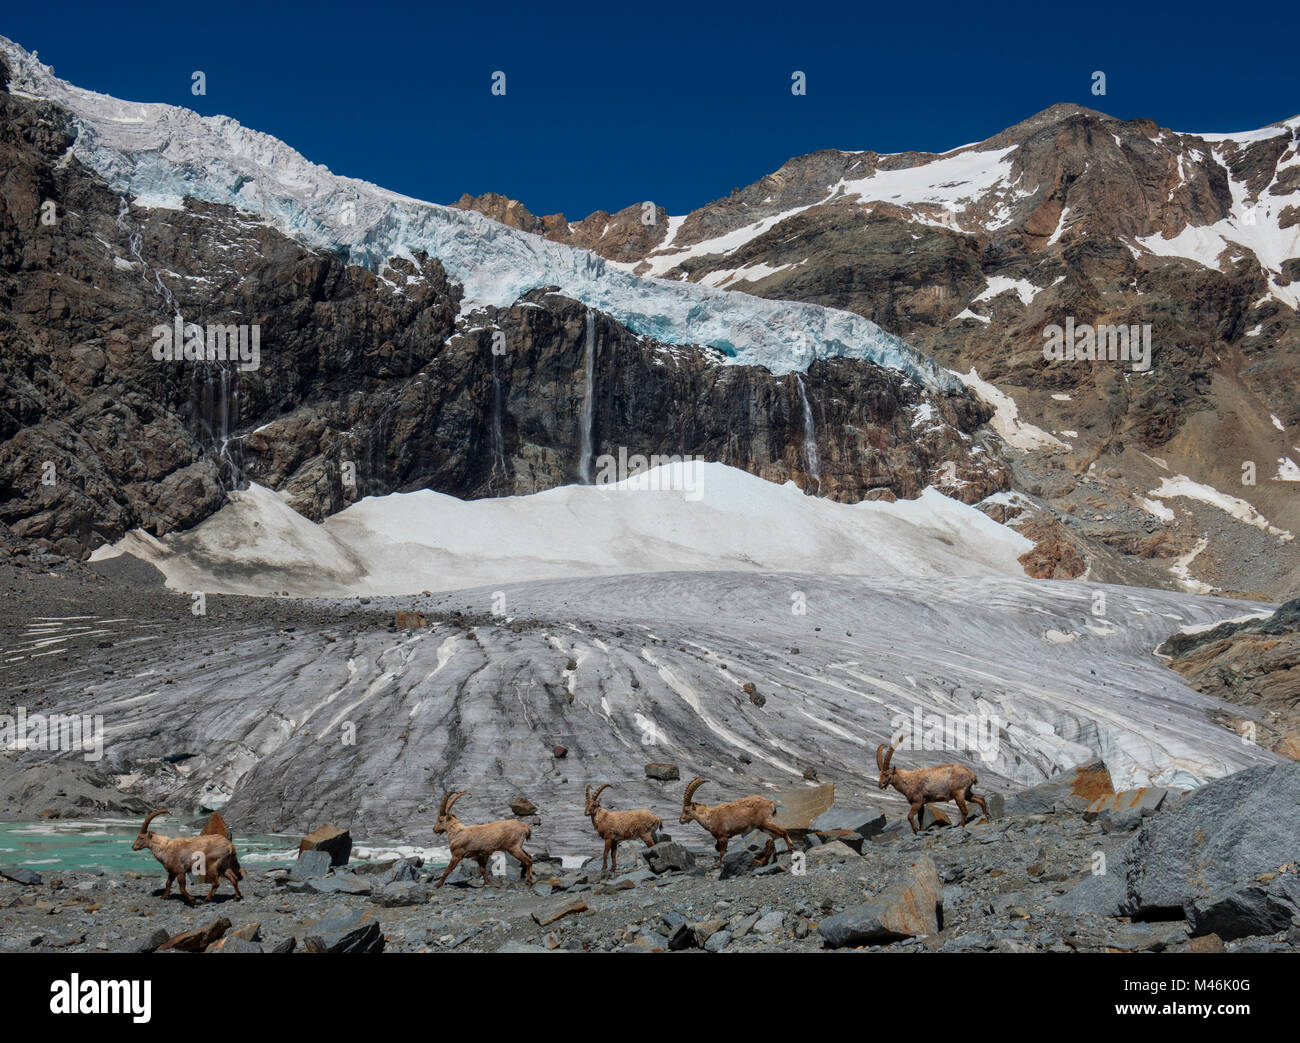 Herde Steinböcke zu Fuß an der Vorderseite des Fellaria Gletscher, Sondrio Provinz, Lombardei, Italien, Alpen, Europa Stockfoto